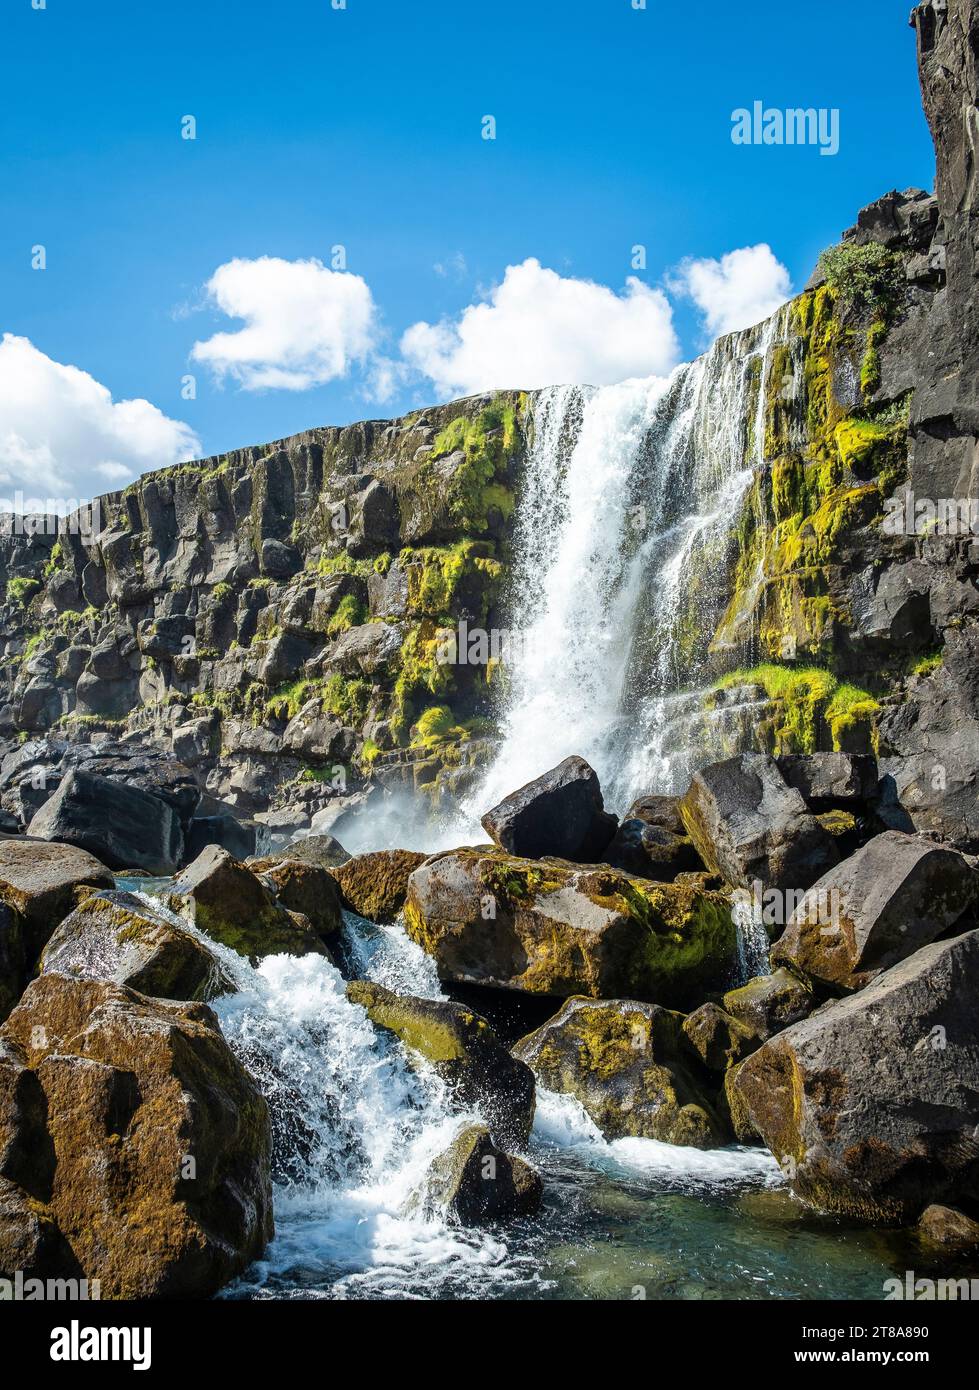 Cascata Oxarfoss a Thingvellir, Islanda, una delle principali attrazioni del percorso turistico del cerchio d'Oro - Islanda sudoccidentale. Foto Stock